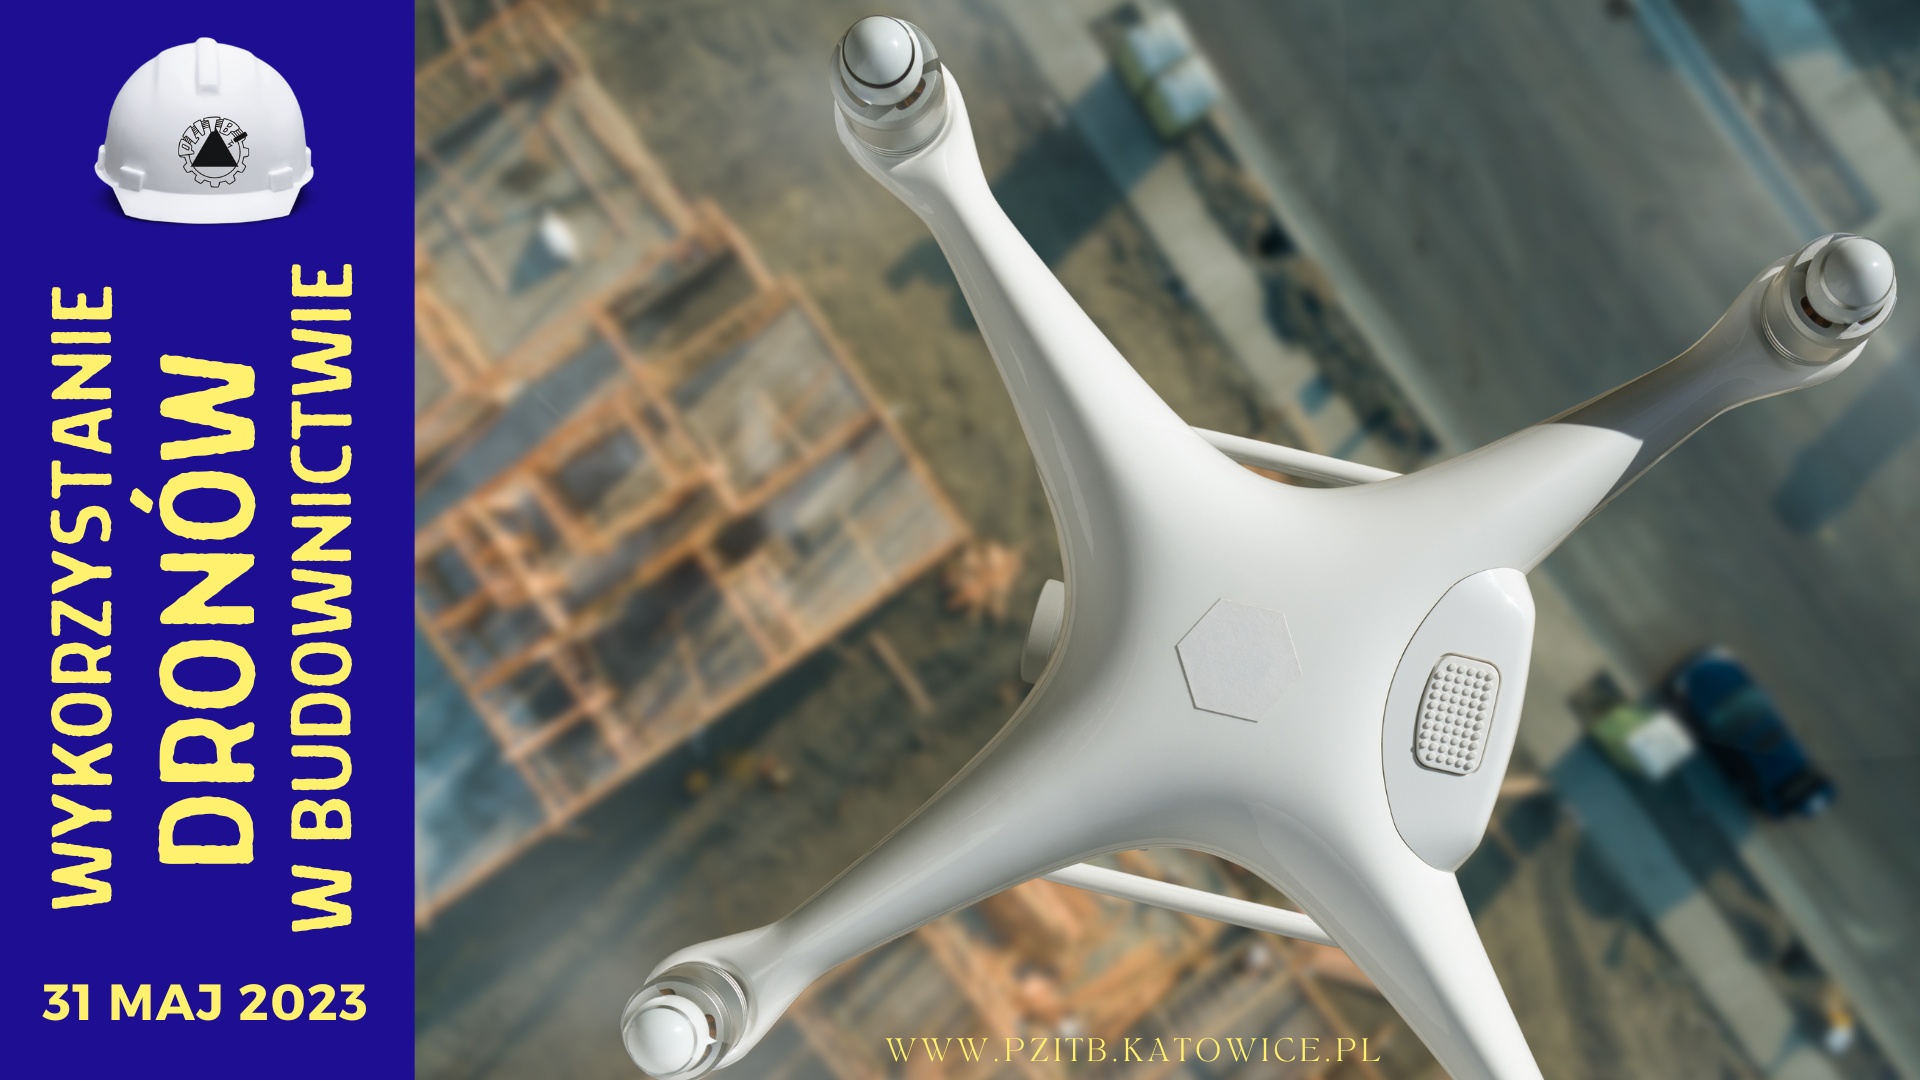 SZKOLENIE JEDNODNIOWE  Wykorzystanie dronów w budownictwie